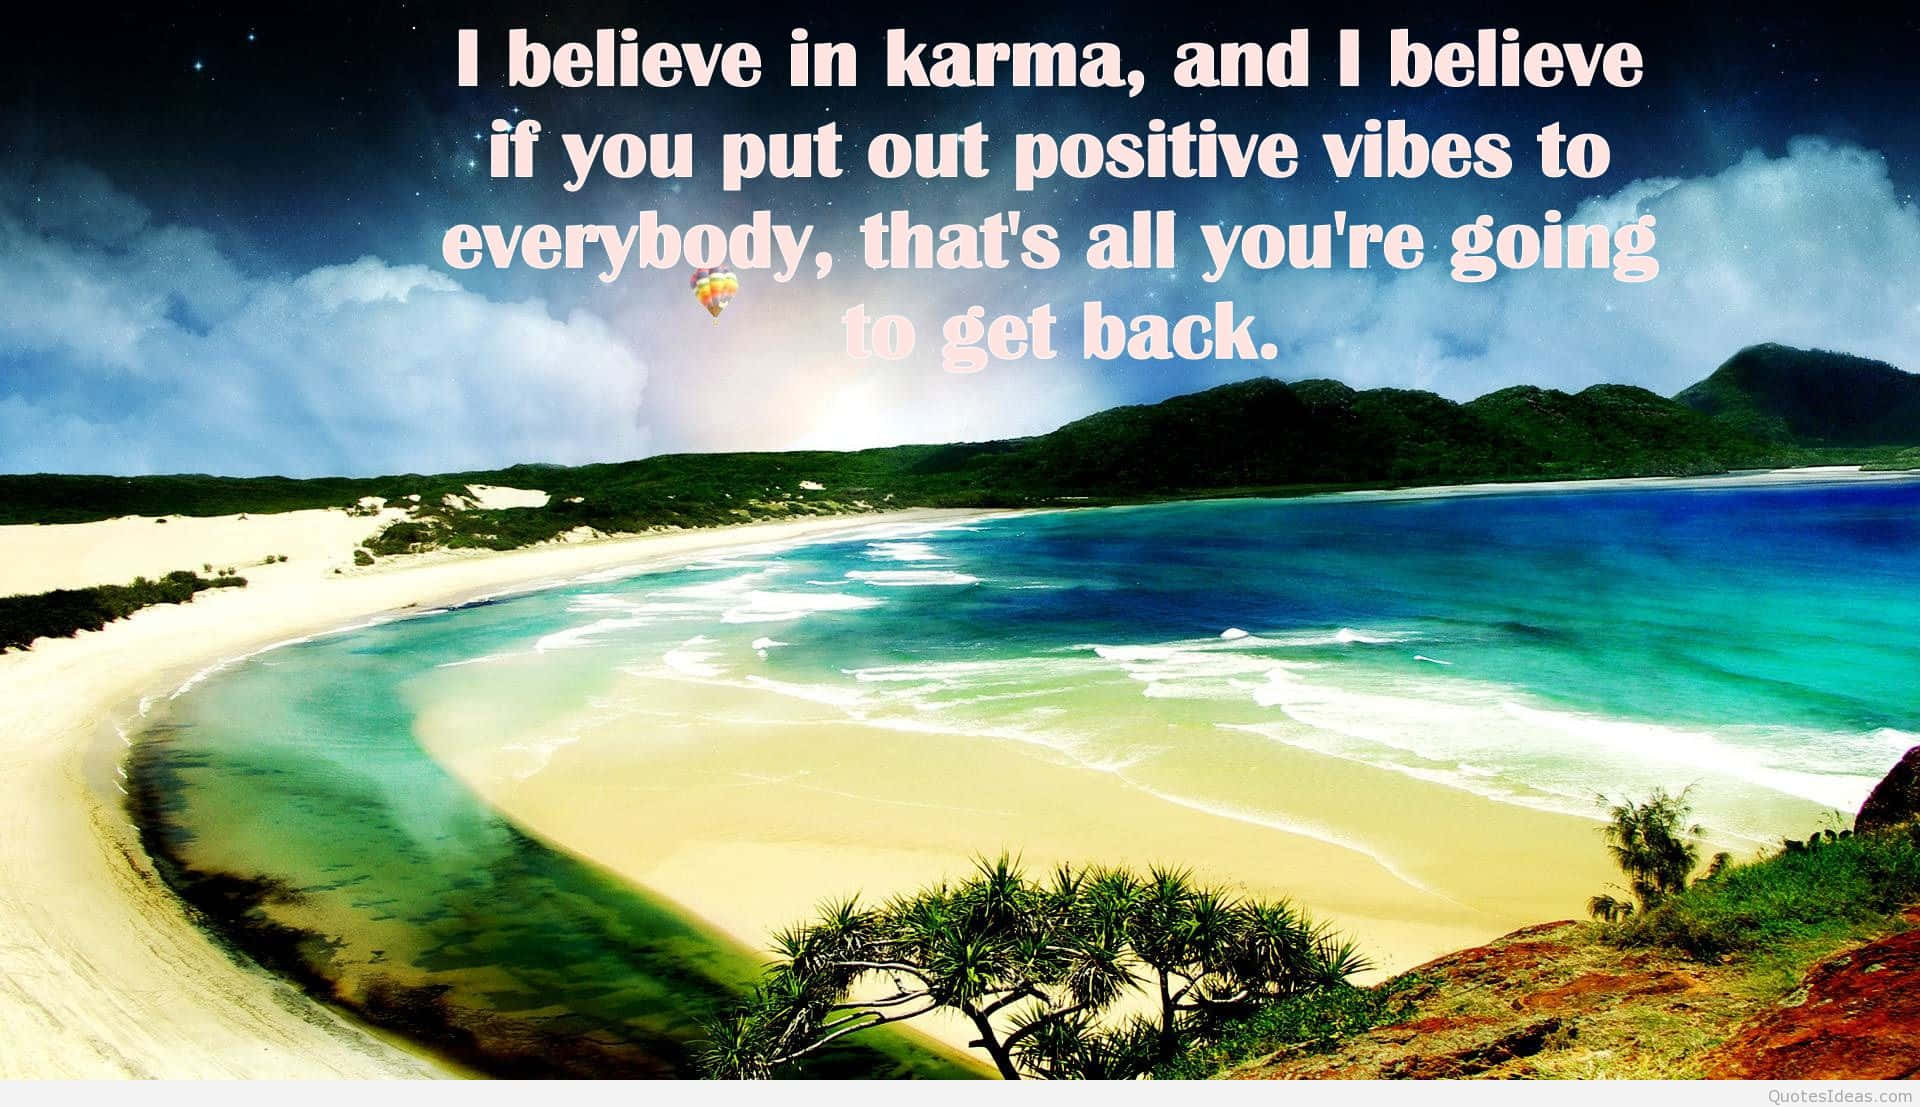 Einstrand Mit Einem Zitat, Das Besagt: Glaube An Karma Und Glaube Daran, Positive Schwingungen Auszusenden, Dann Wird Es Jedem Zurückkommen.